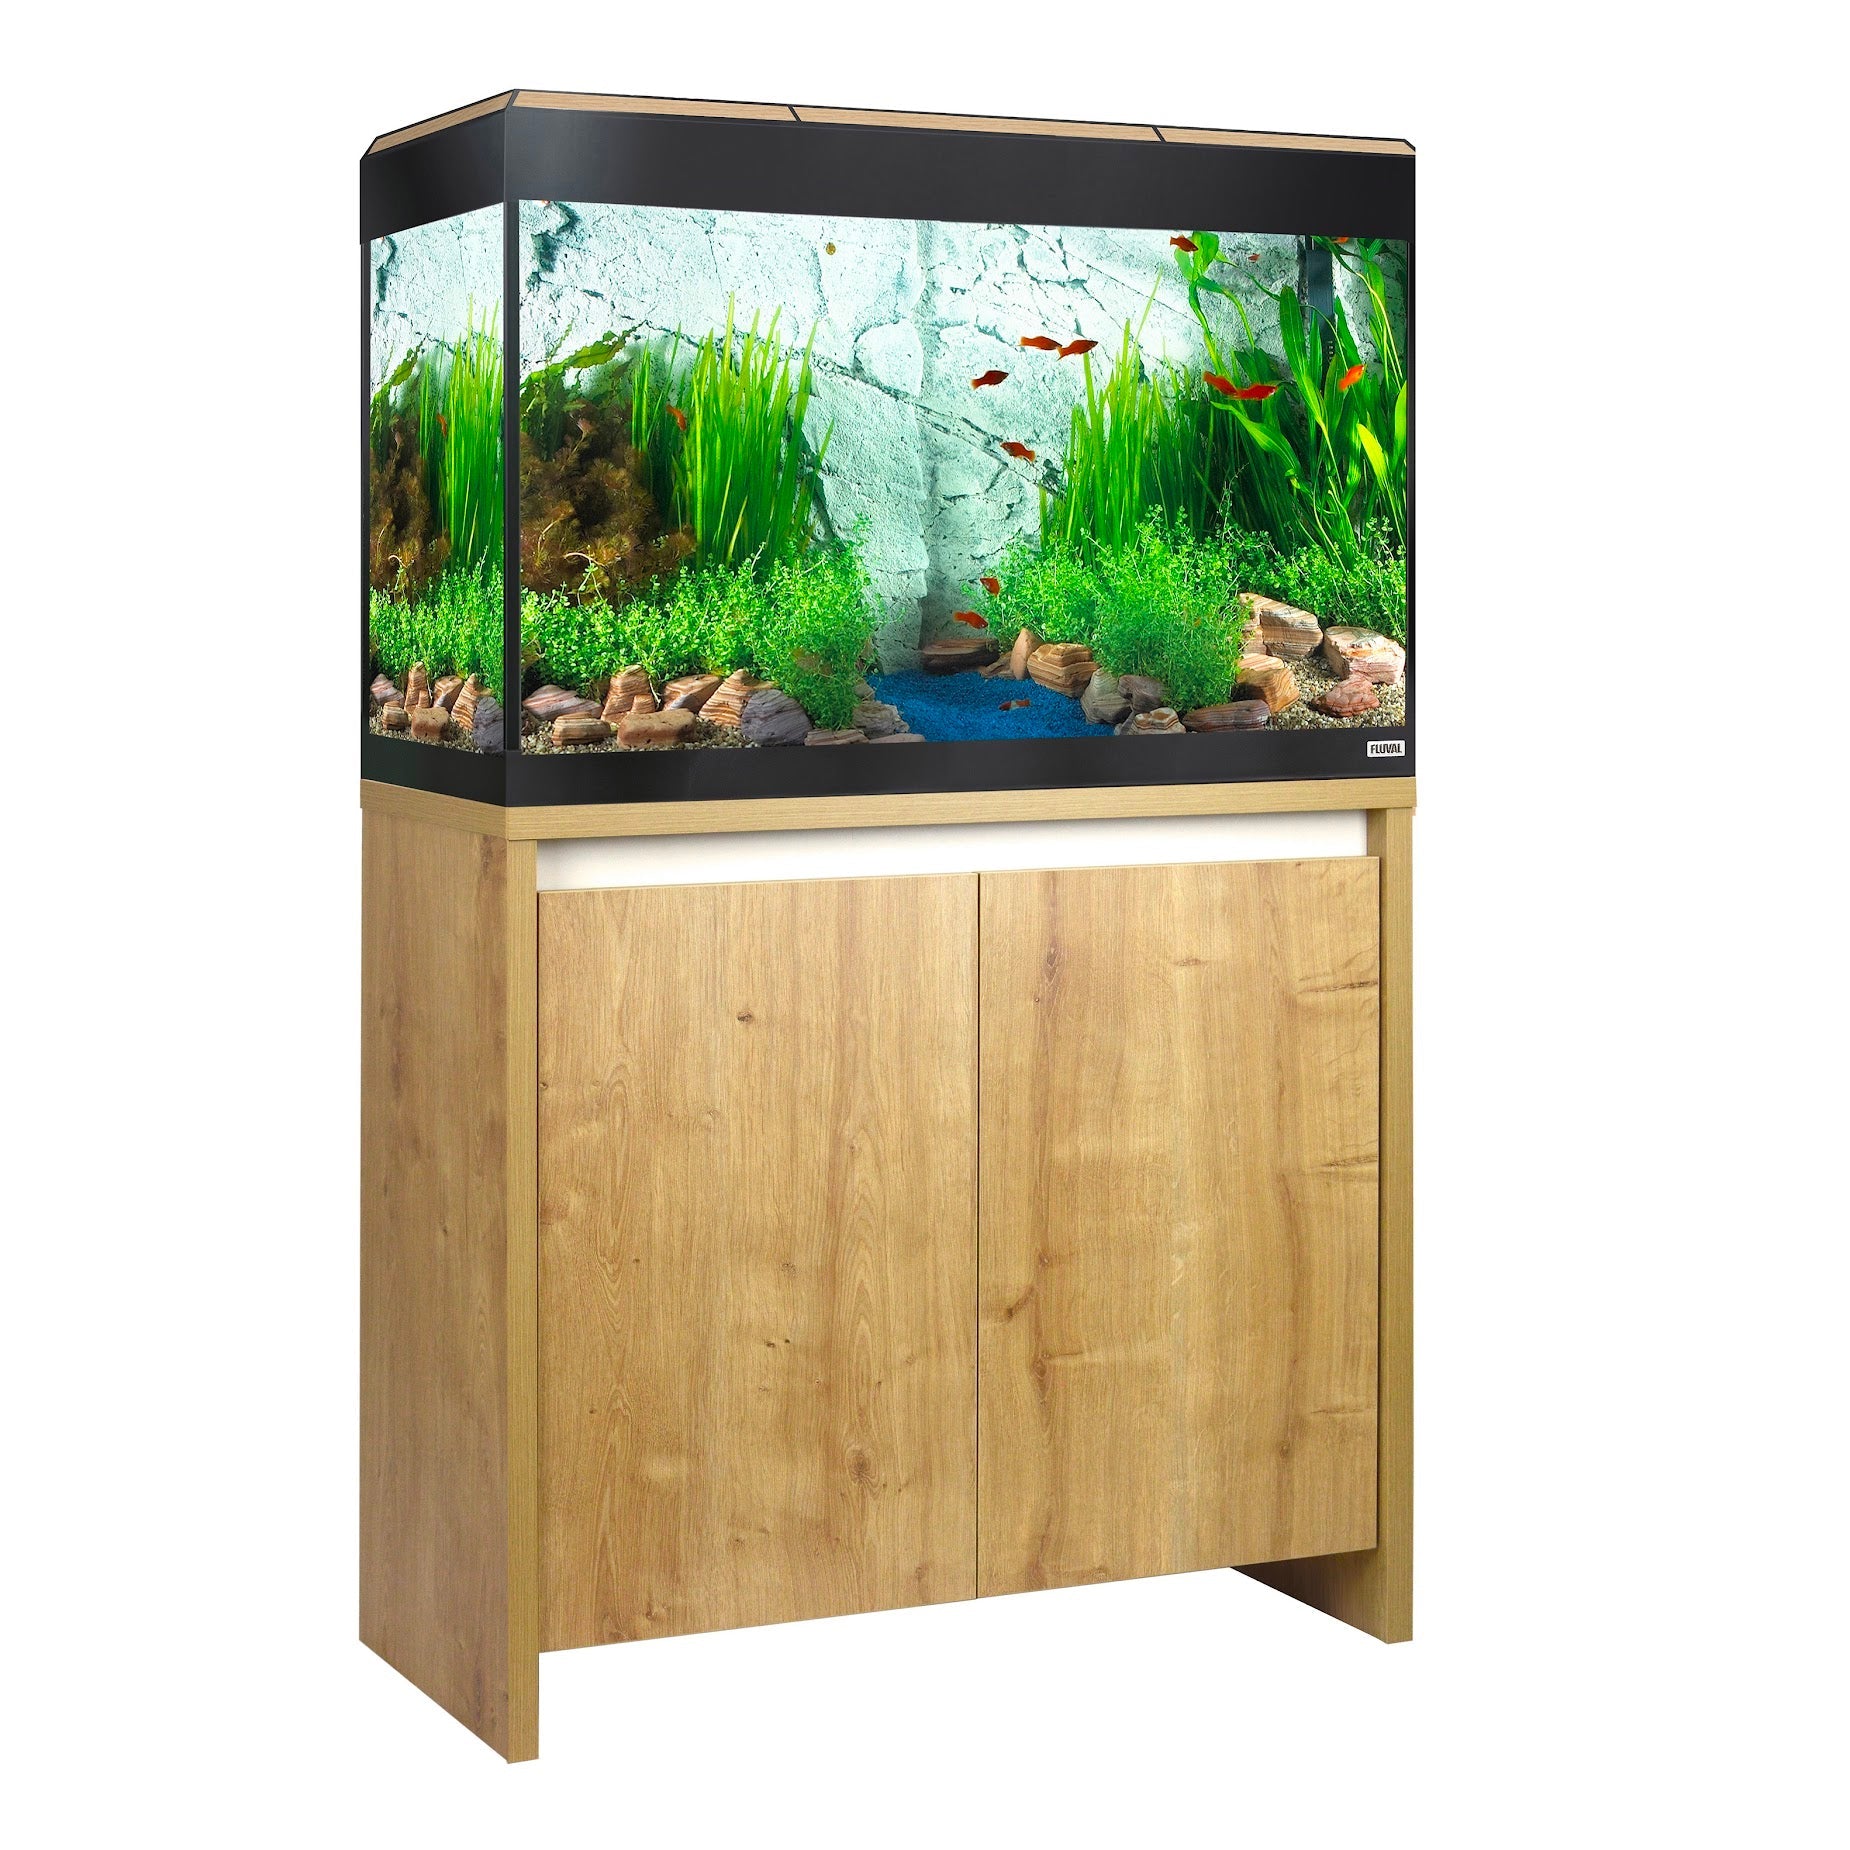 Fluval Roma Bluetooth LED 125 Aquarium and Cabinet - Oak - Charterhouse Aquatics